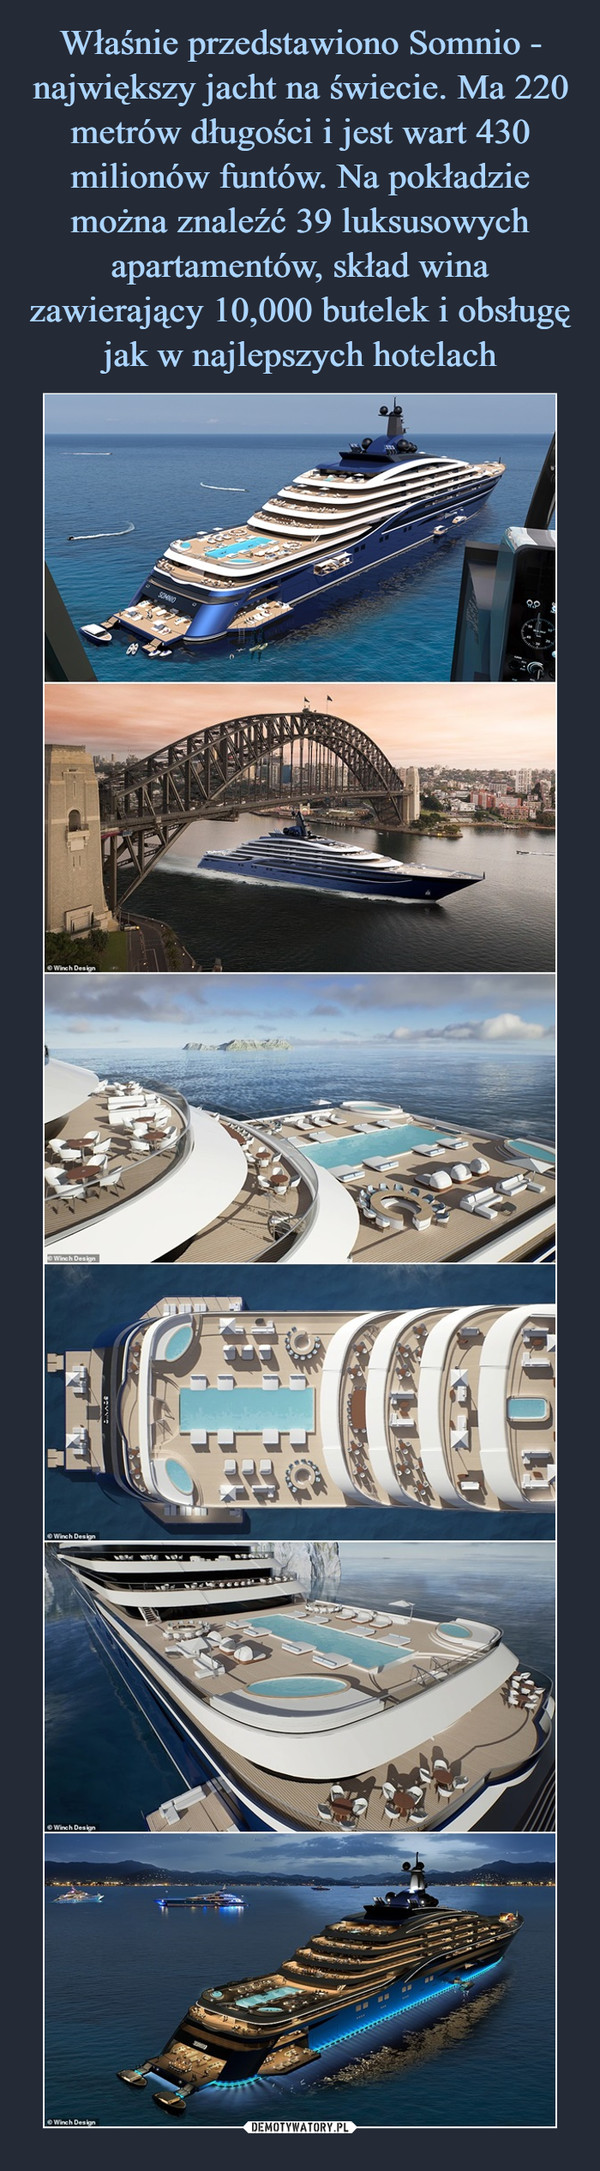 Właśnie przedstawiono Somnio - największy jacht na świecie. Ma 220 metrów długości i jest wart 430 milionów funtów. Na pokładzie można znaleźć 39 luksusowych apartamentów, skład wina zawierający 10,000 butelek i obsługę jak w najlepszych hotelach